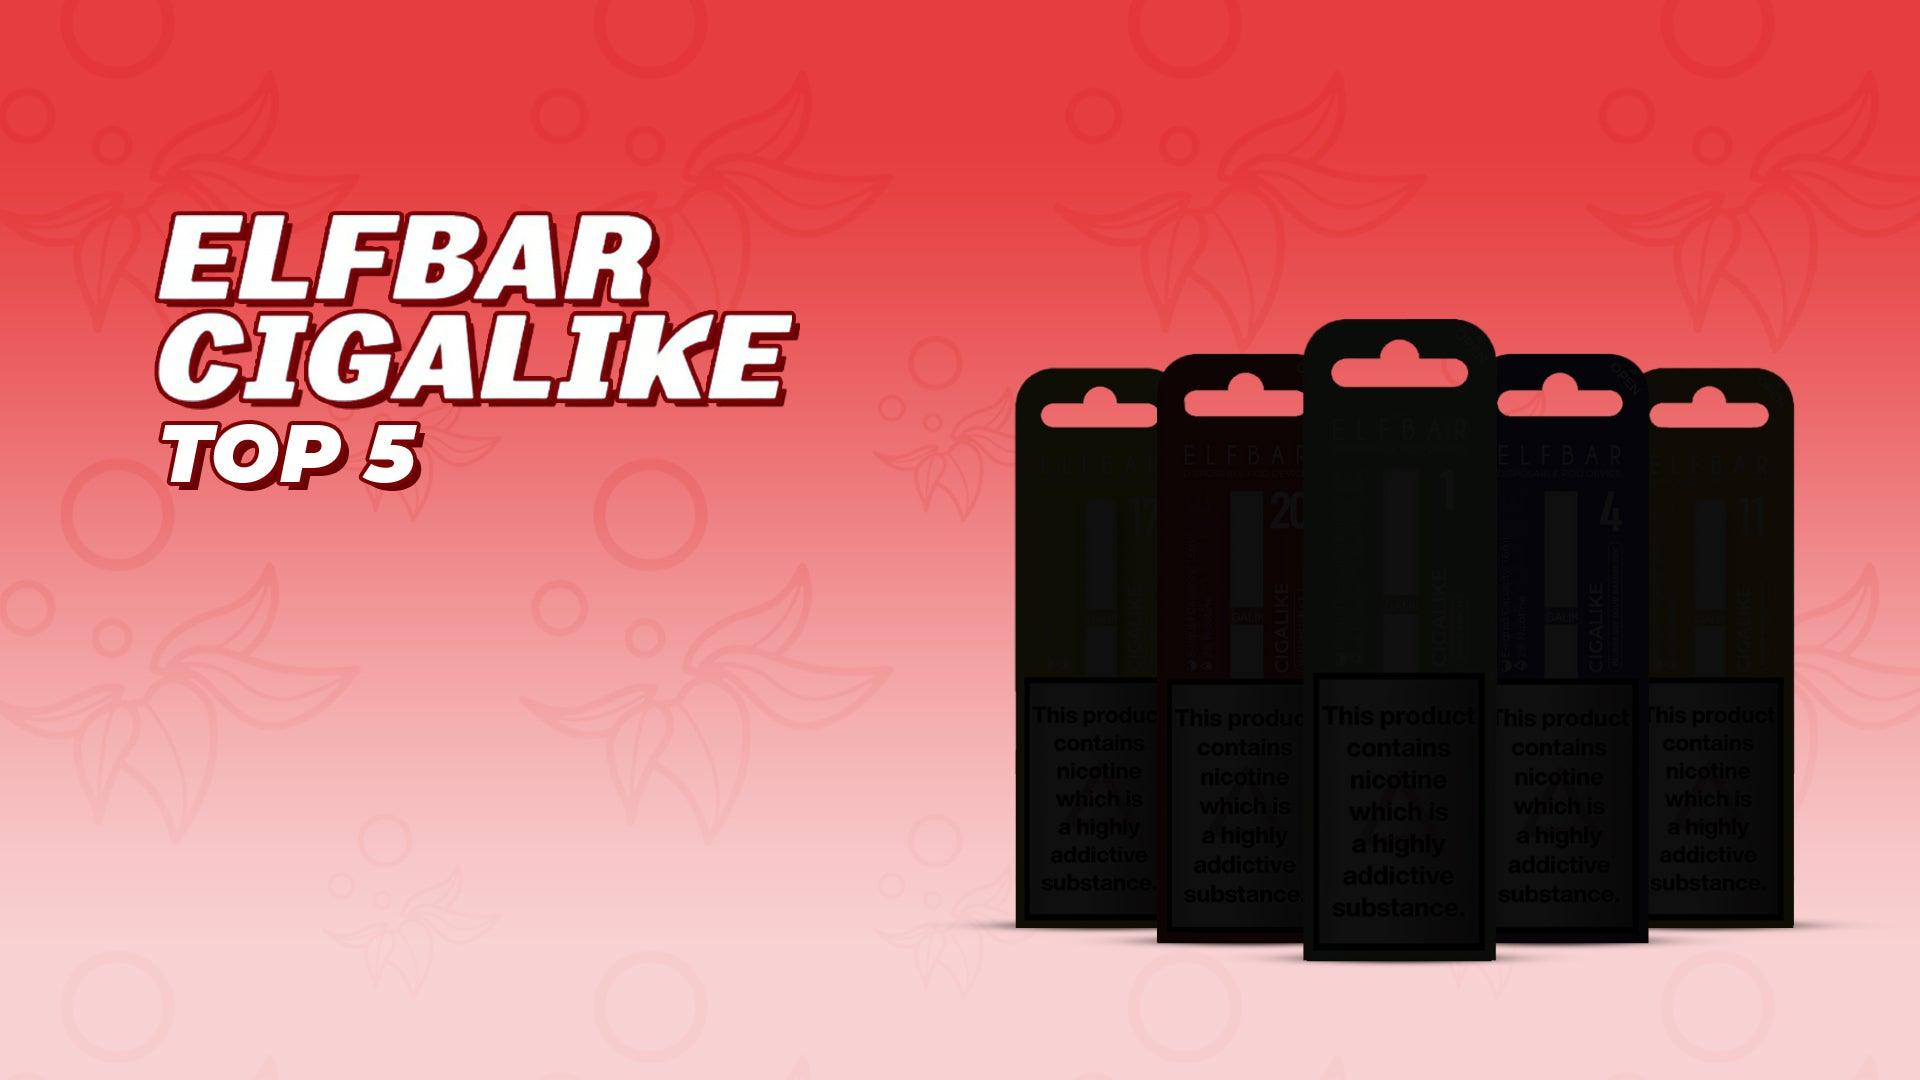 Top 5 Elf Bar Cigalike Disposable Vapes - Brand:Elf Bar, Category:Vape Kits, Sub Category:Disposables